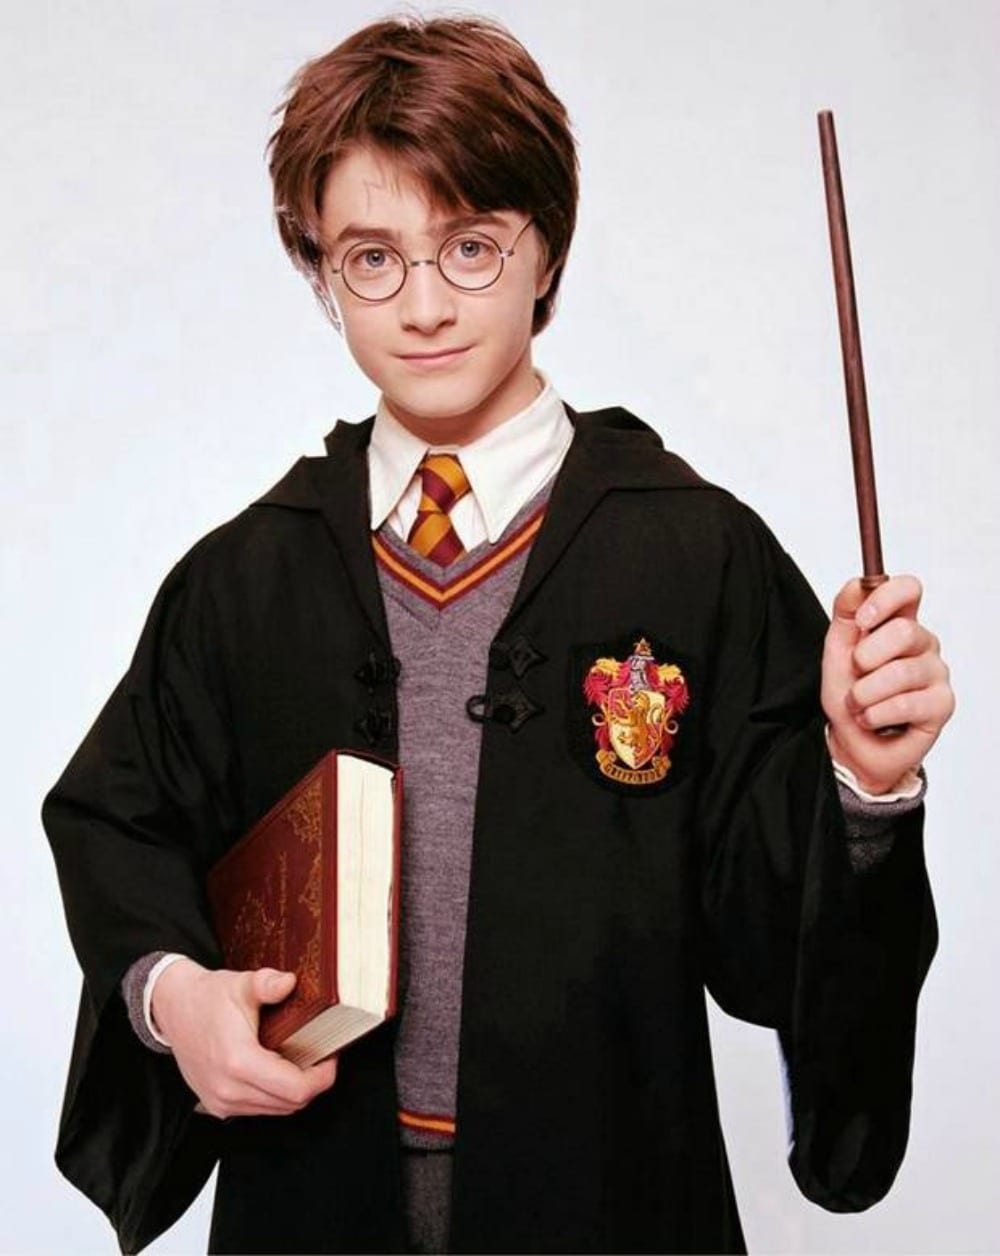 Harry Potter e La Pietra Filosofale compie 20 anni. Buon compleanno al maghetto più famoso